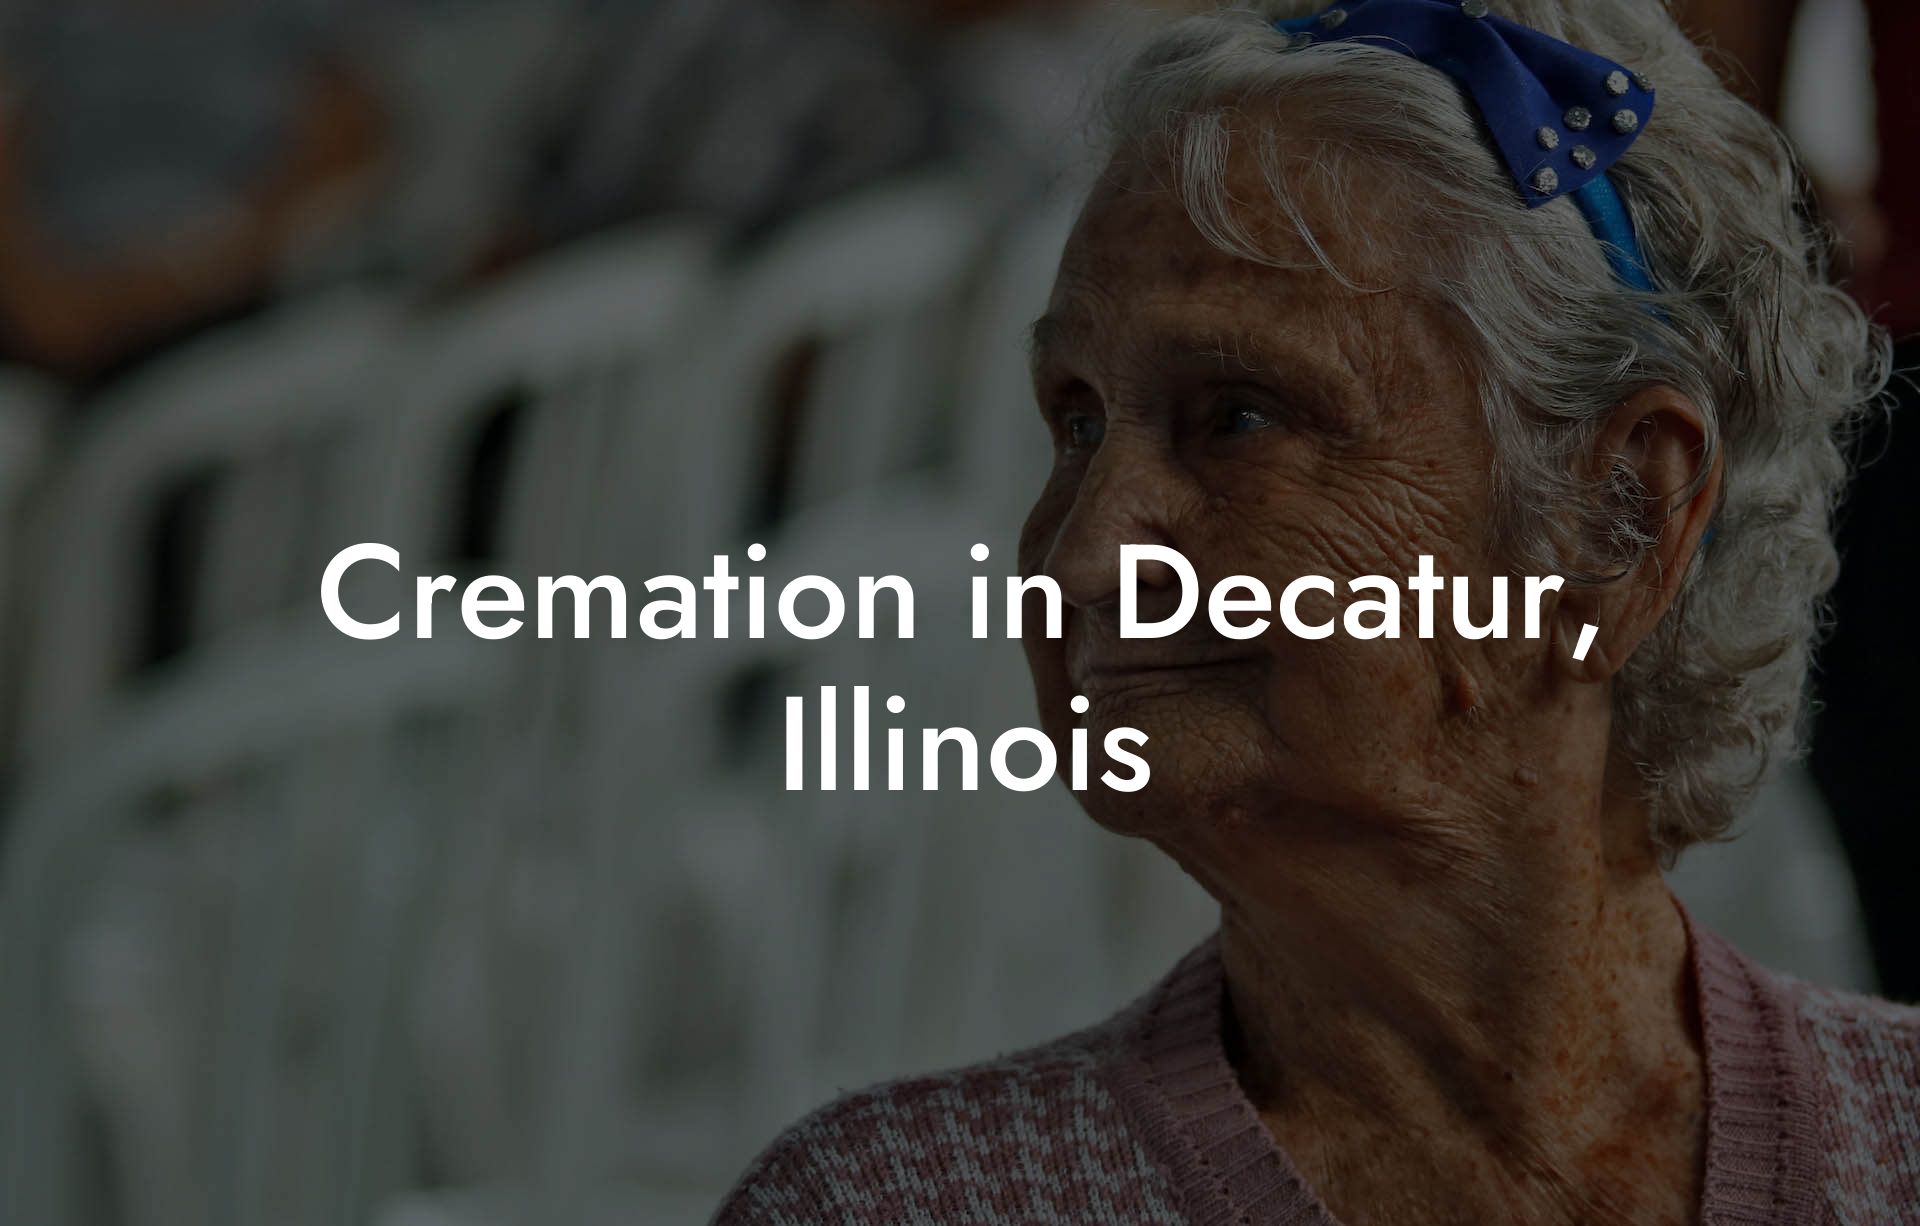 Cremation in Decatur, Illinois